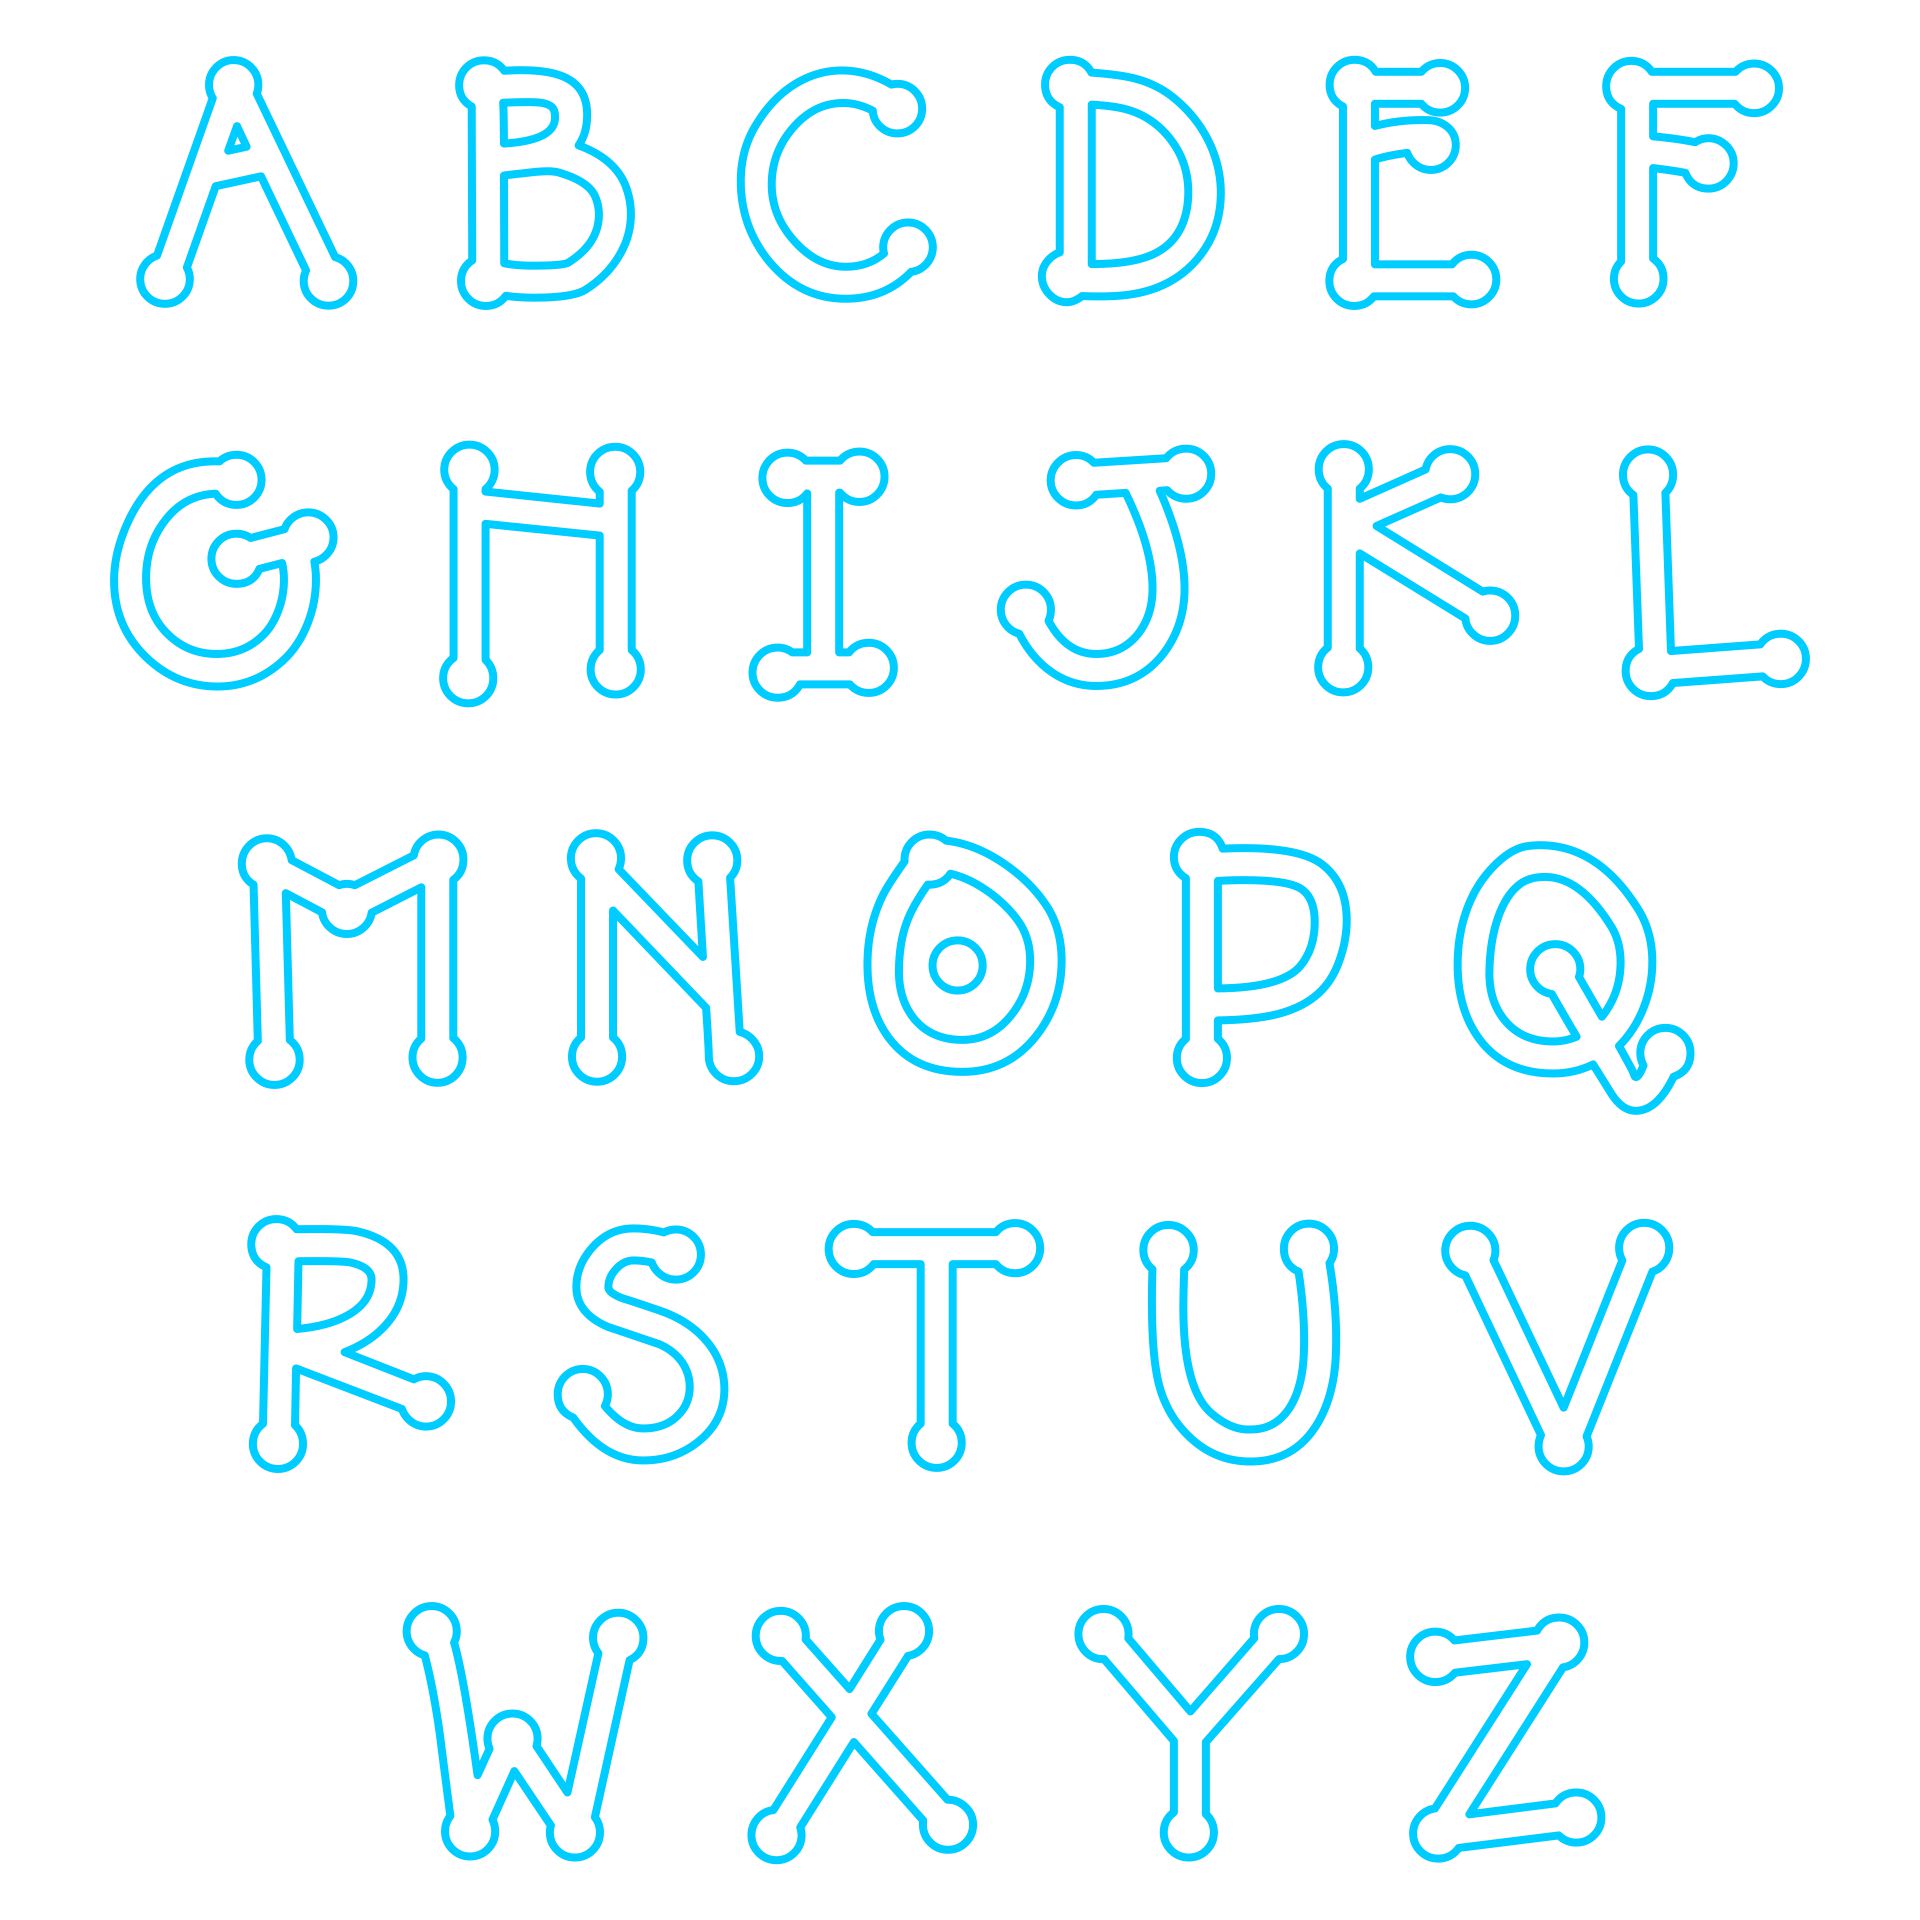 letter-applique-patterns